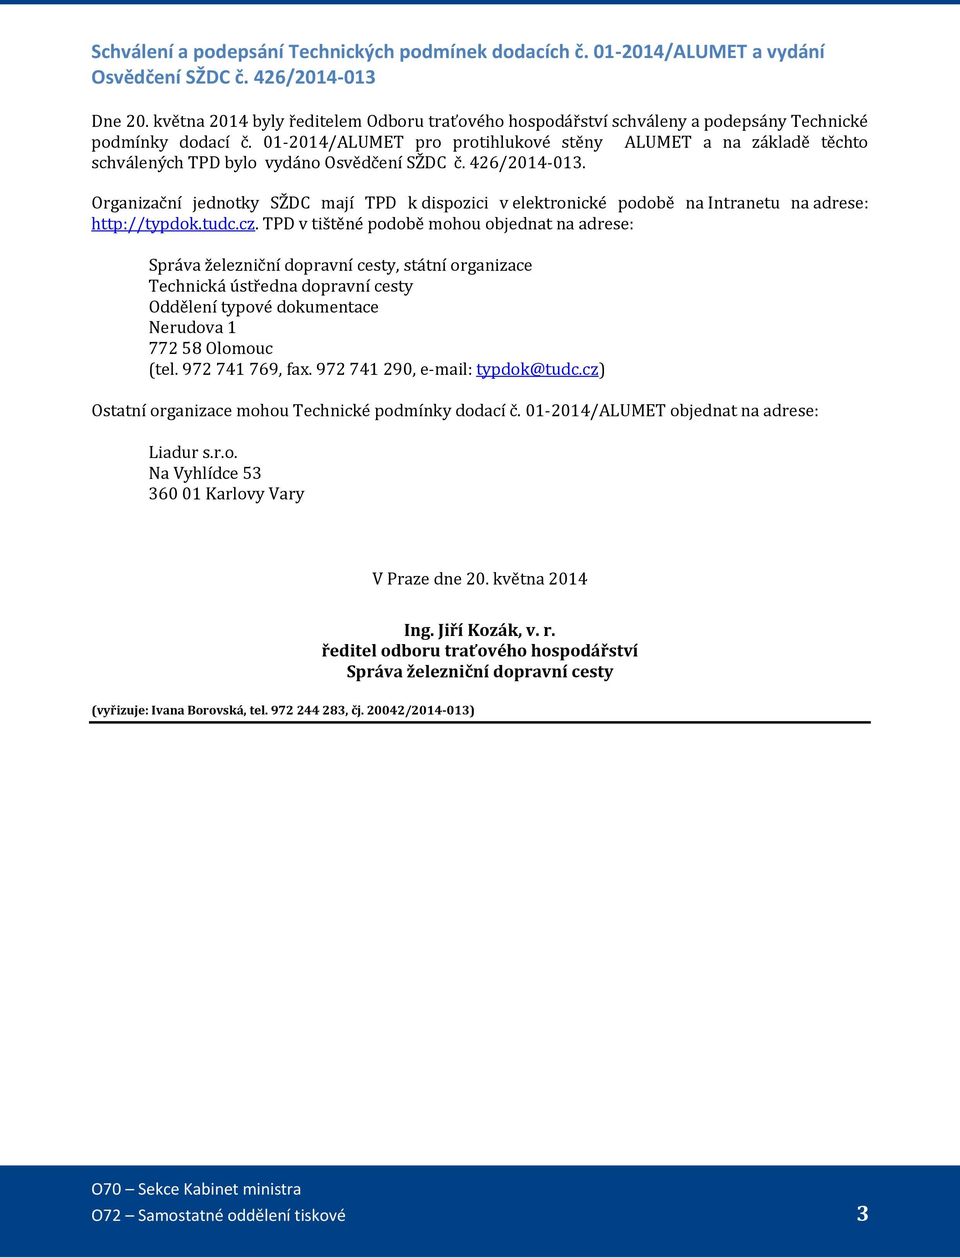 01-2014/ALUMET pro protihlukové stěny ALUMET a na základě těchto schválených TPD bylo vydáno Osvědčení SŽDC č. 426/2014-013.